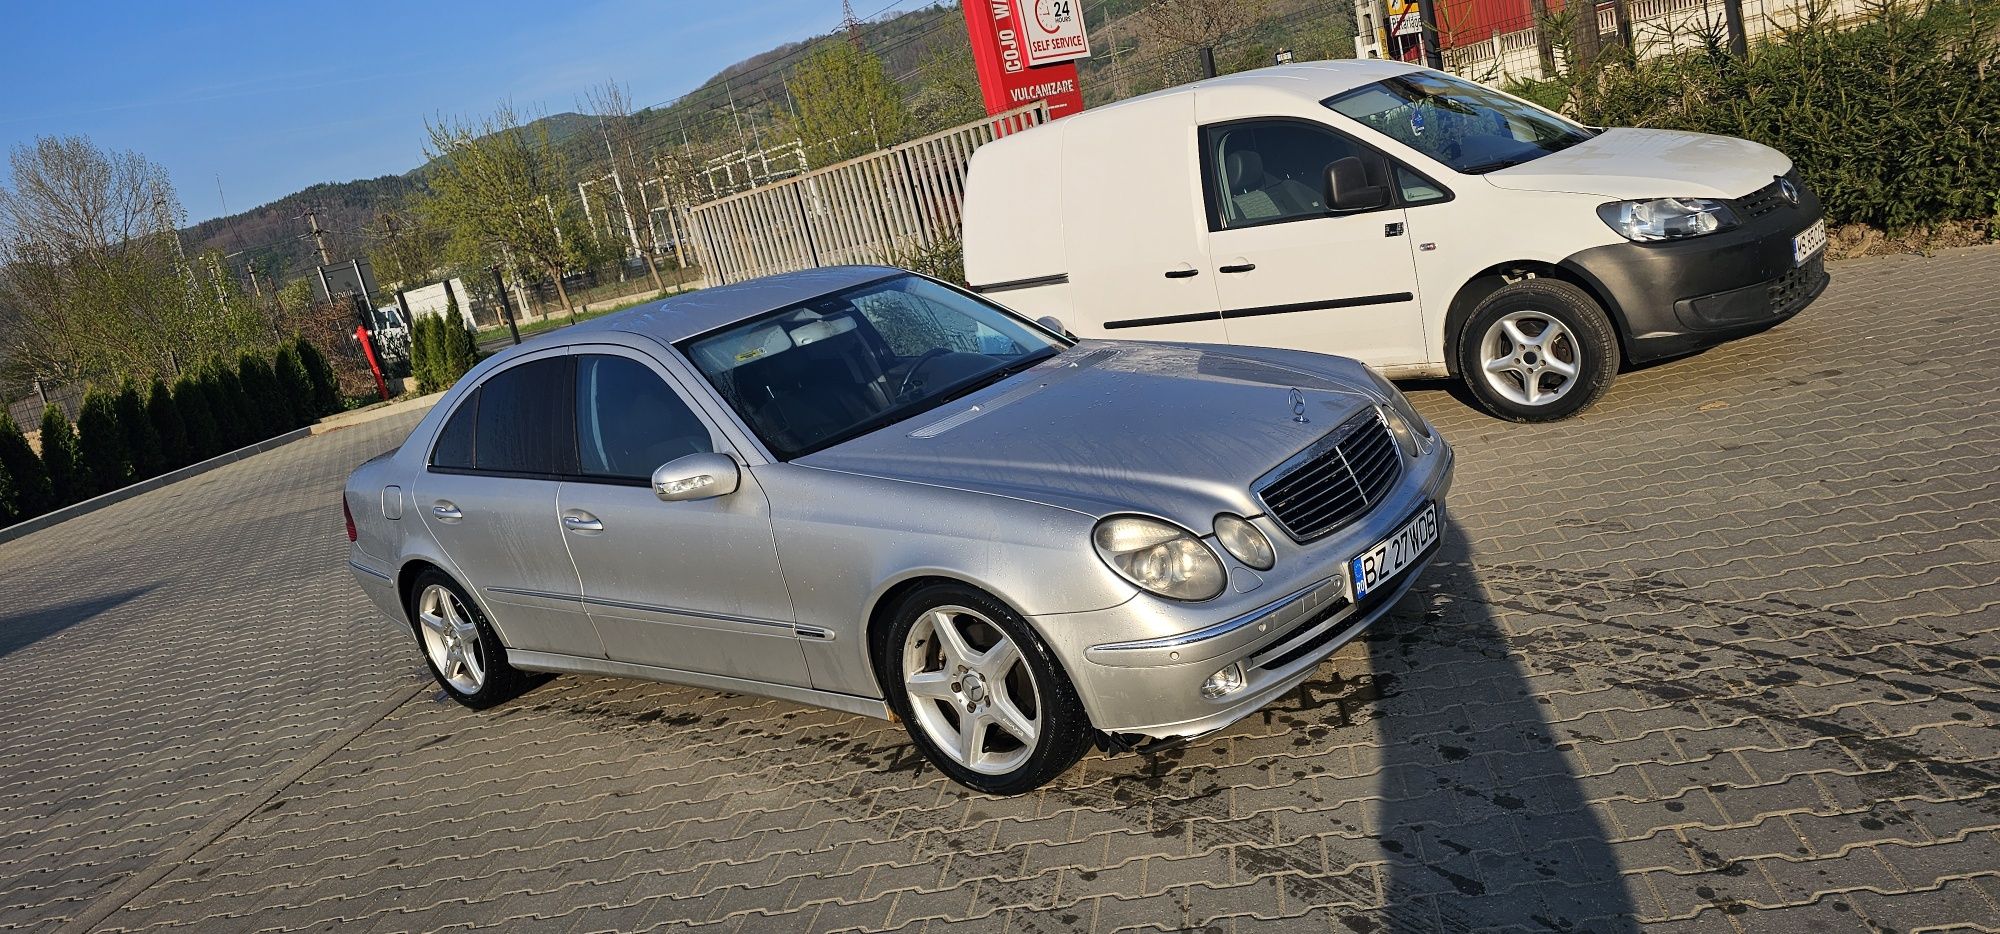 Vând Mercedes E classe W211 2003 2.7 Avantgarde